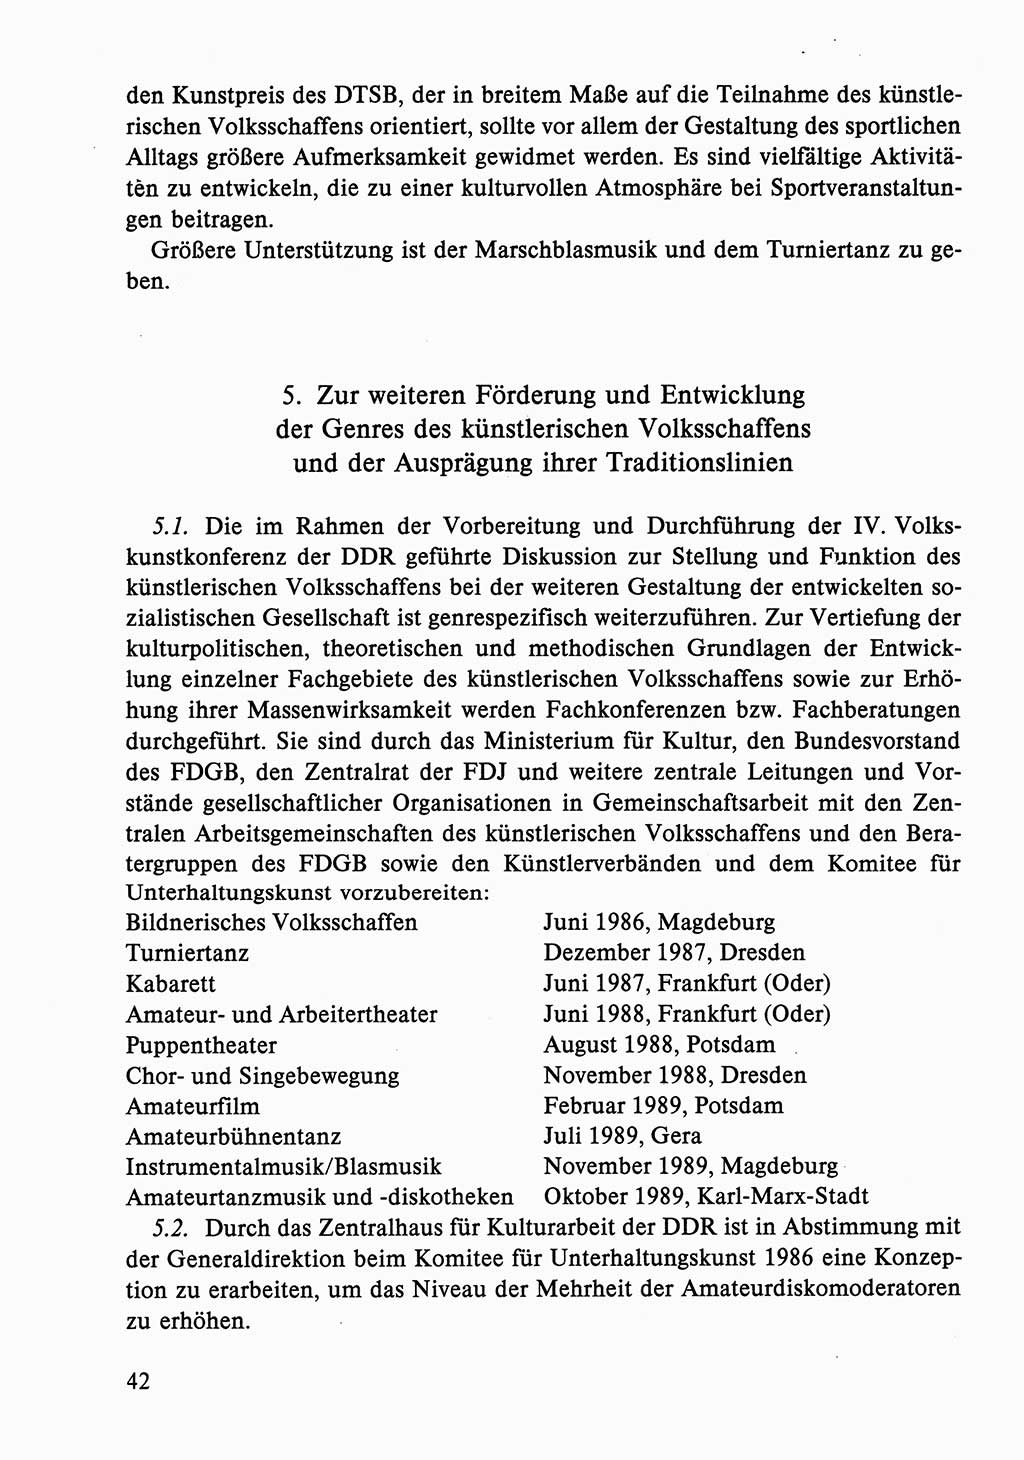 Dokumente der Sozialistischen Einheitspartei Deutschlands (SED) [Deutsche Demokratische Republik (DDR)] 1986-1987, Seite 42 (Dok. SED DDR 1986-1987, S. 42)